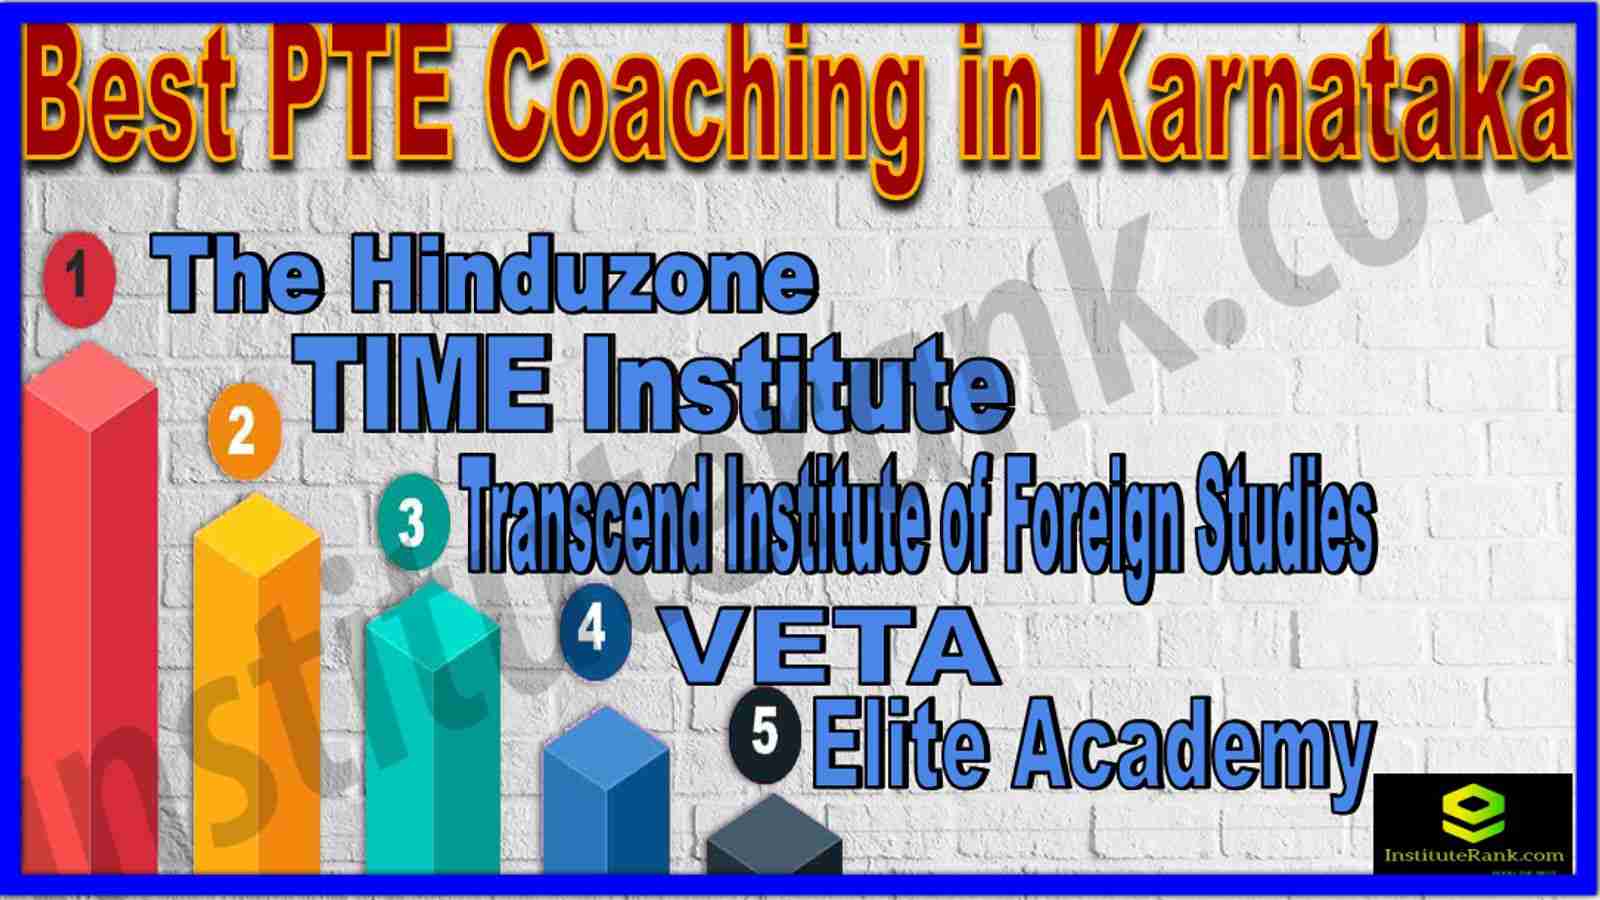 Top PTE Coaching in Karnataka